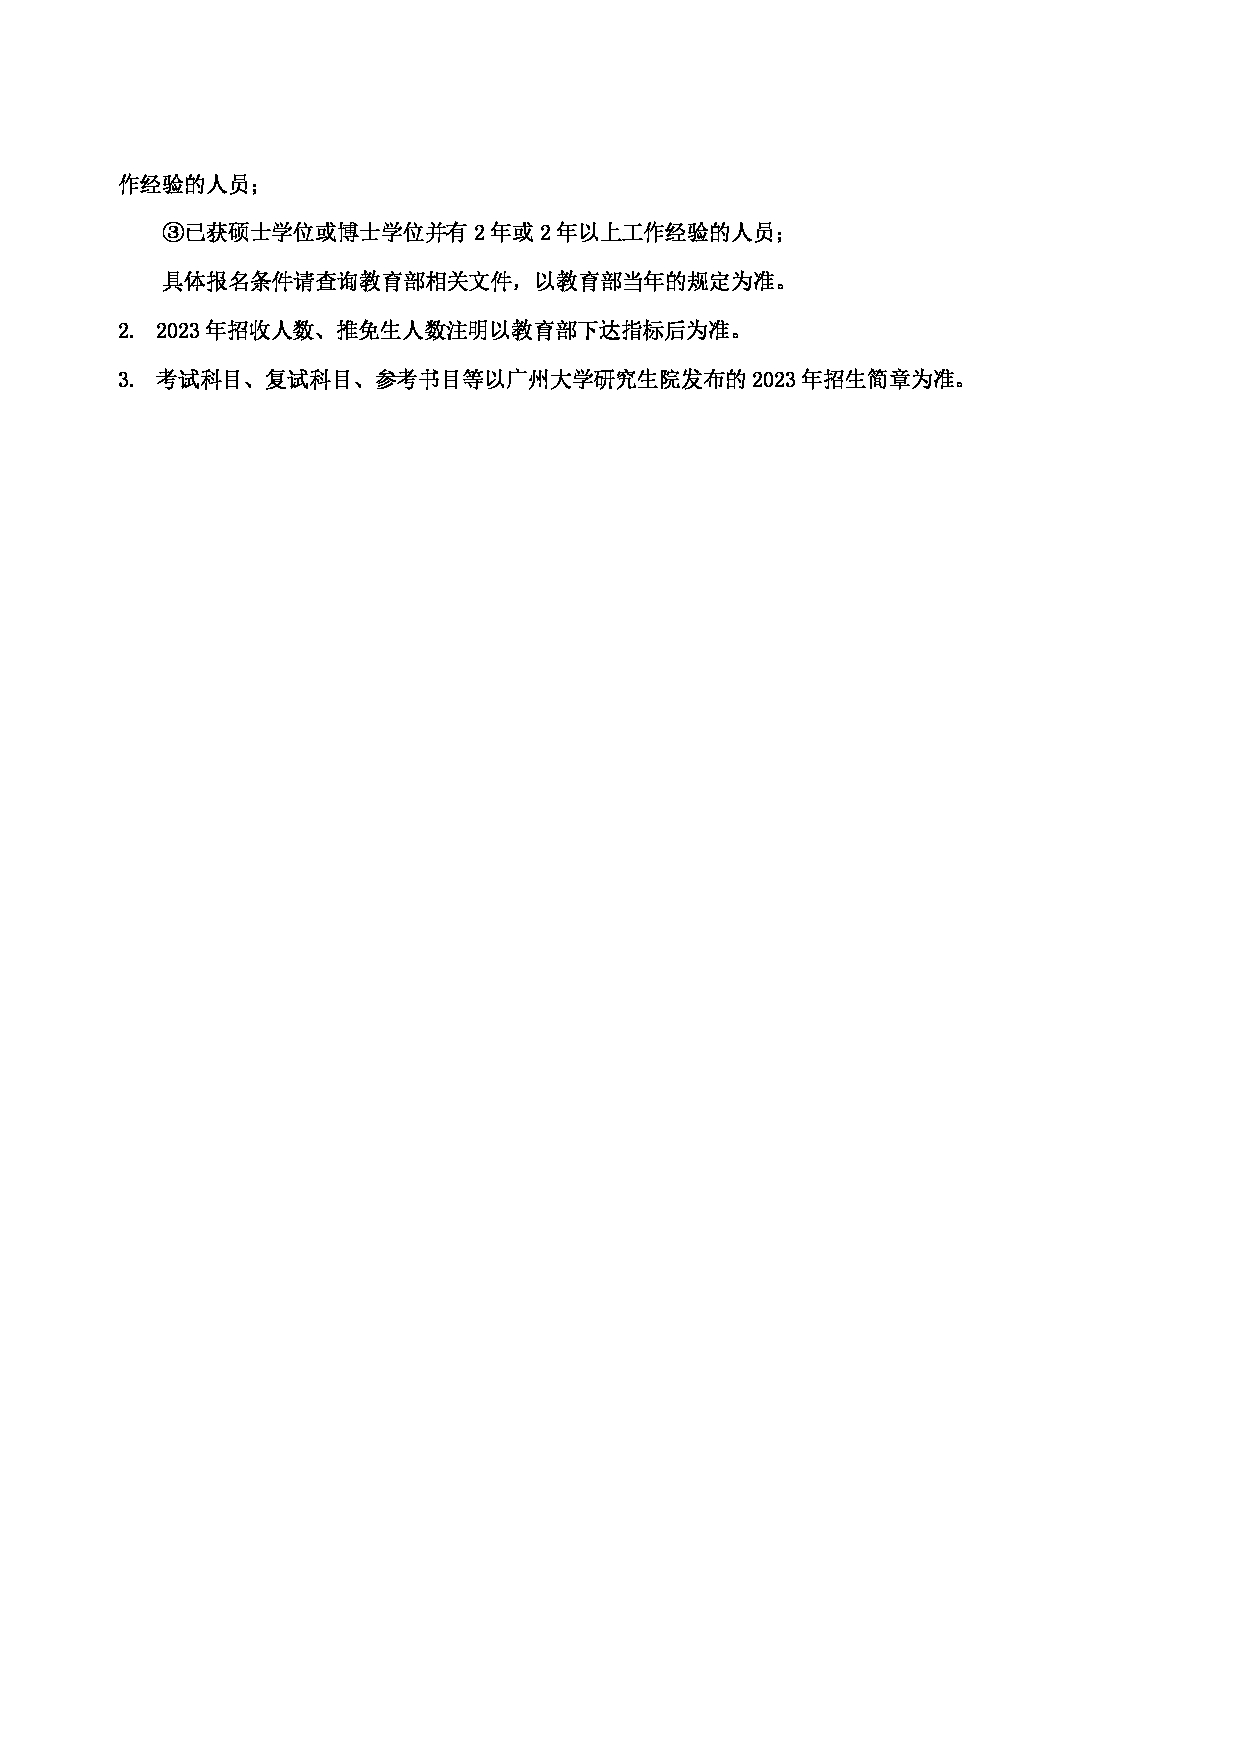 2023招生目录：广州大学2023年  9管理学院 研究生考试招生目录第3页